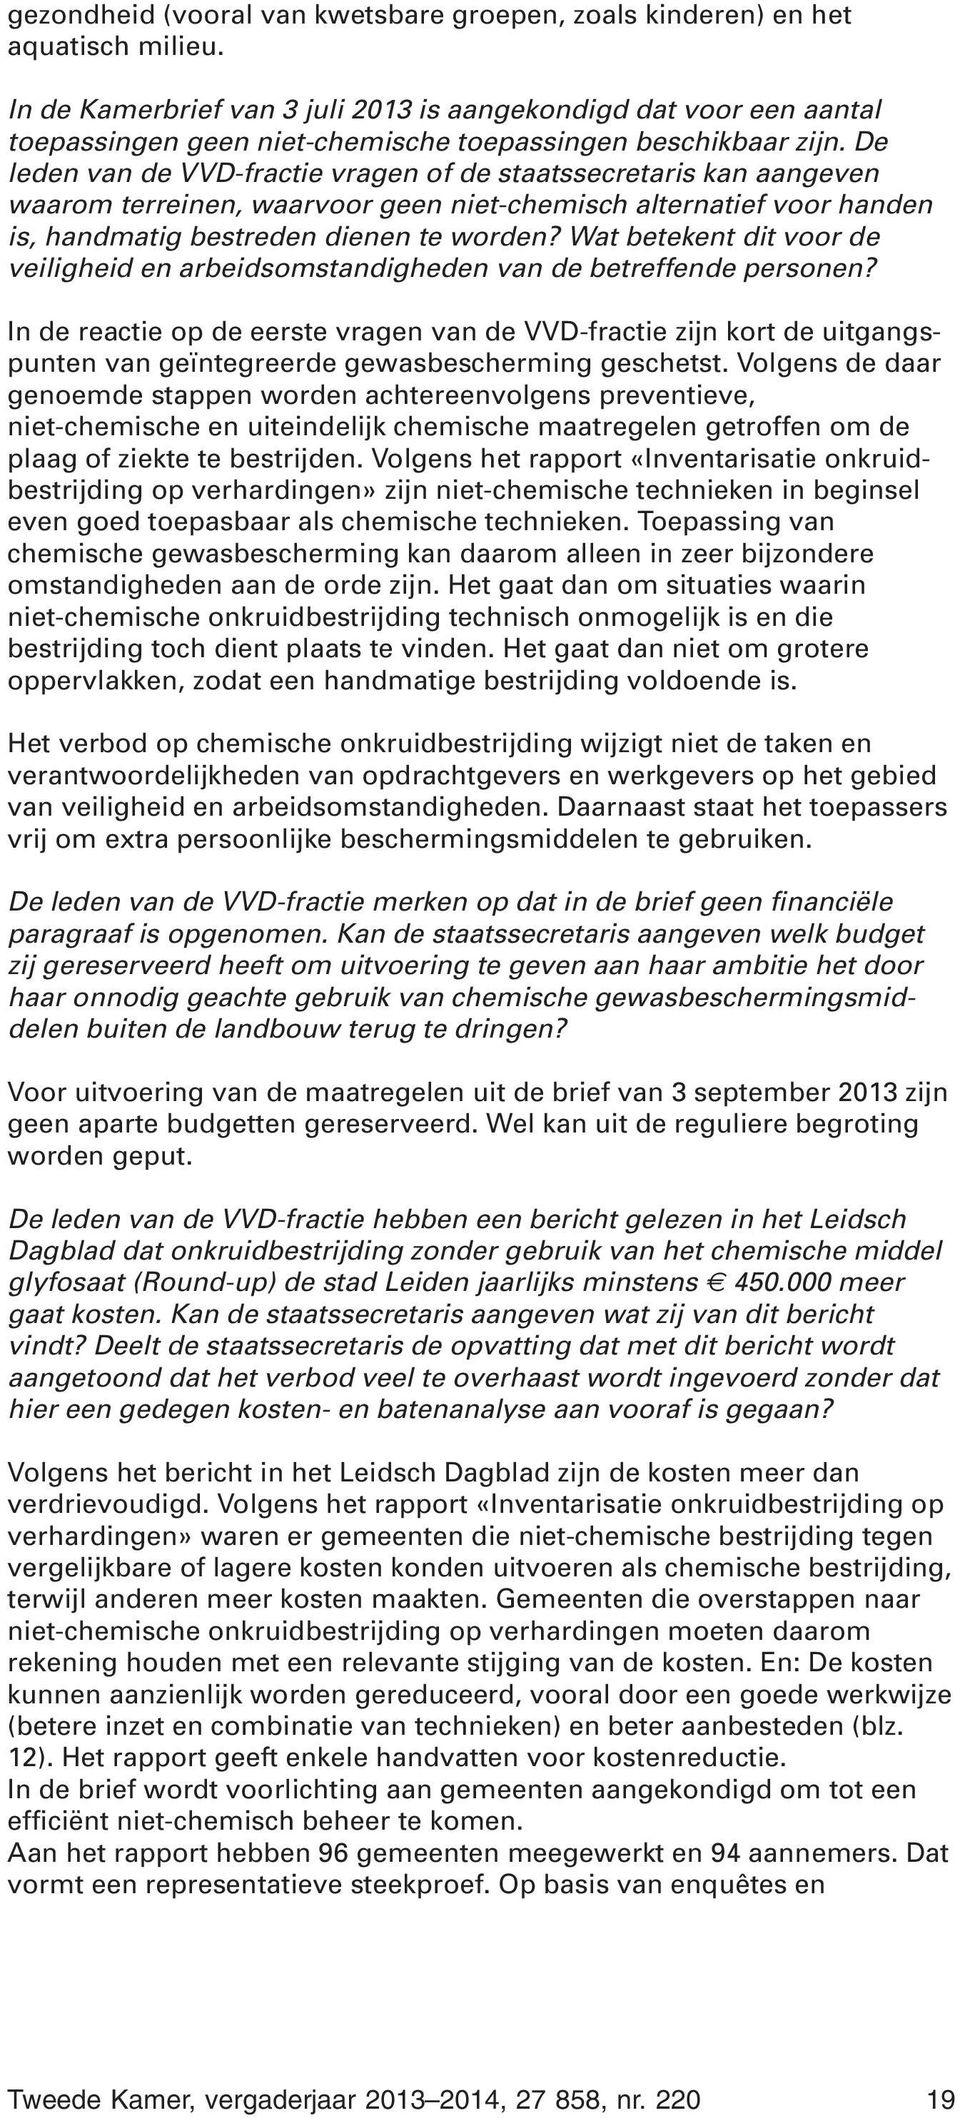 De leden van de VVD-fractie vragen of de staatssecretaris kan aangeven waarom terreinen, waarvoor geen niet-chemisch alternatief voor handen is, handmatig bestreden dienen te worden?